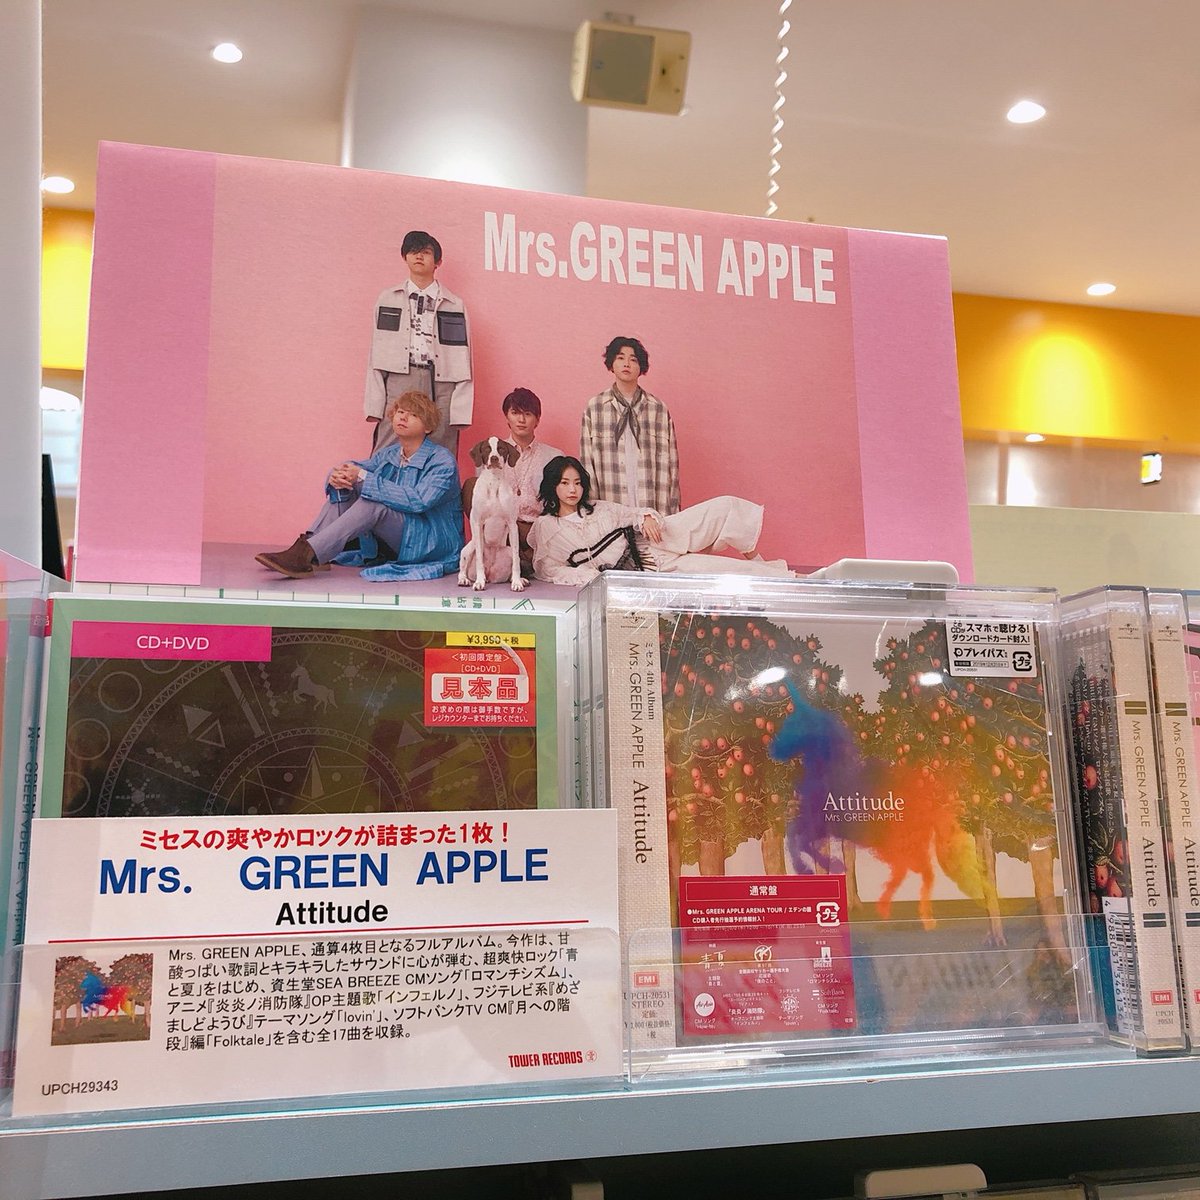 タワーレコード アリオ上尾店 בטוויטר Mrsgreenapple Mrs Green Appleの4枚目となるフルアルバム Attitude 入荷しました 青と夏 ロマンチシズム 僕のこと などのタイアップ曲を始めとした 全17曲を収録 先着特典はポスター トーク